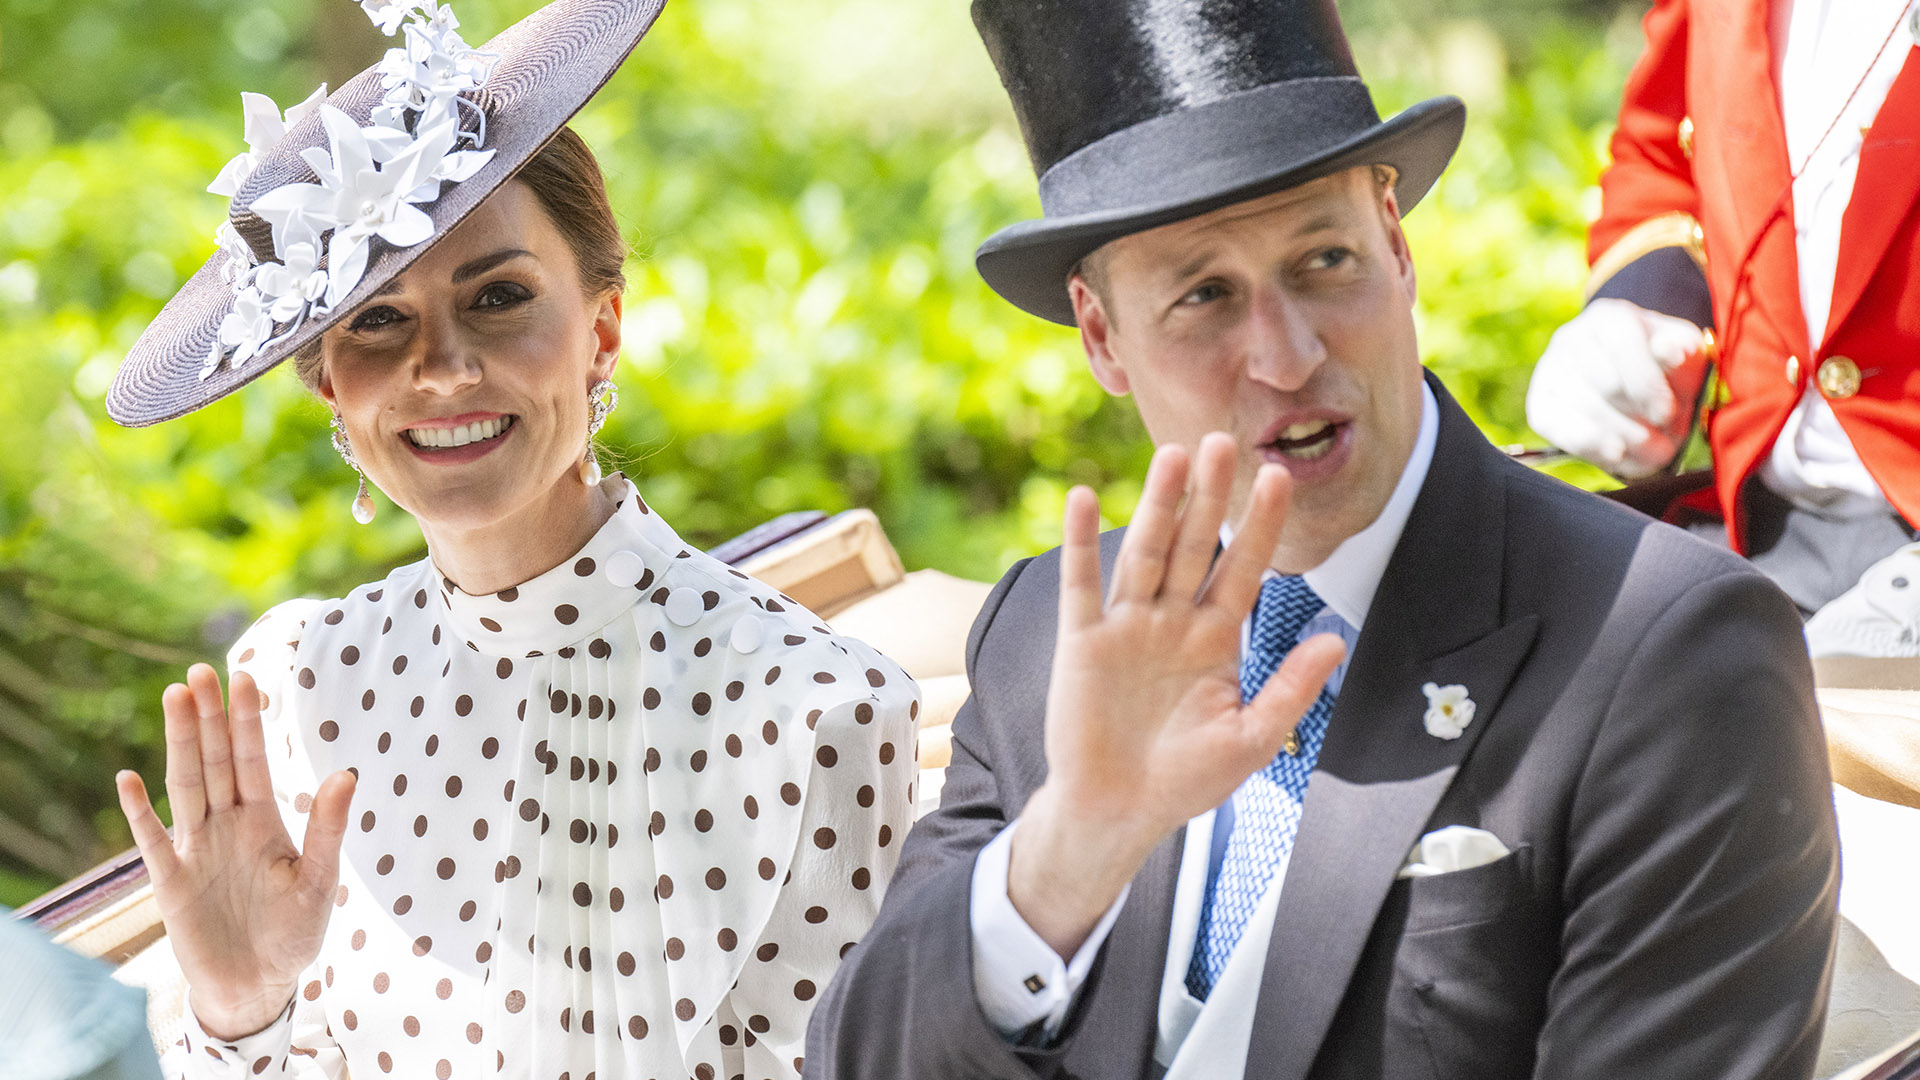 El príncipe Guillermo cumple 40 años: su fiesta conjunta con Kate Middleton